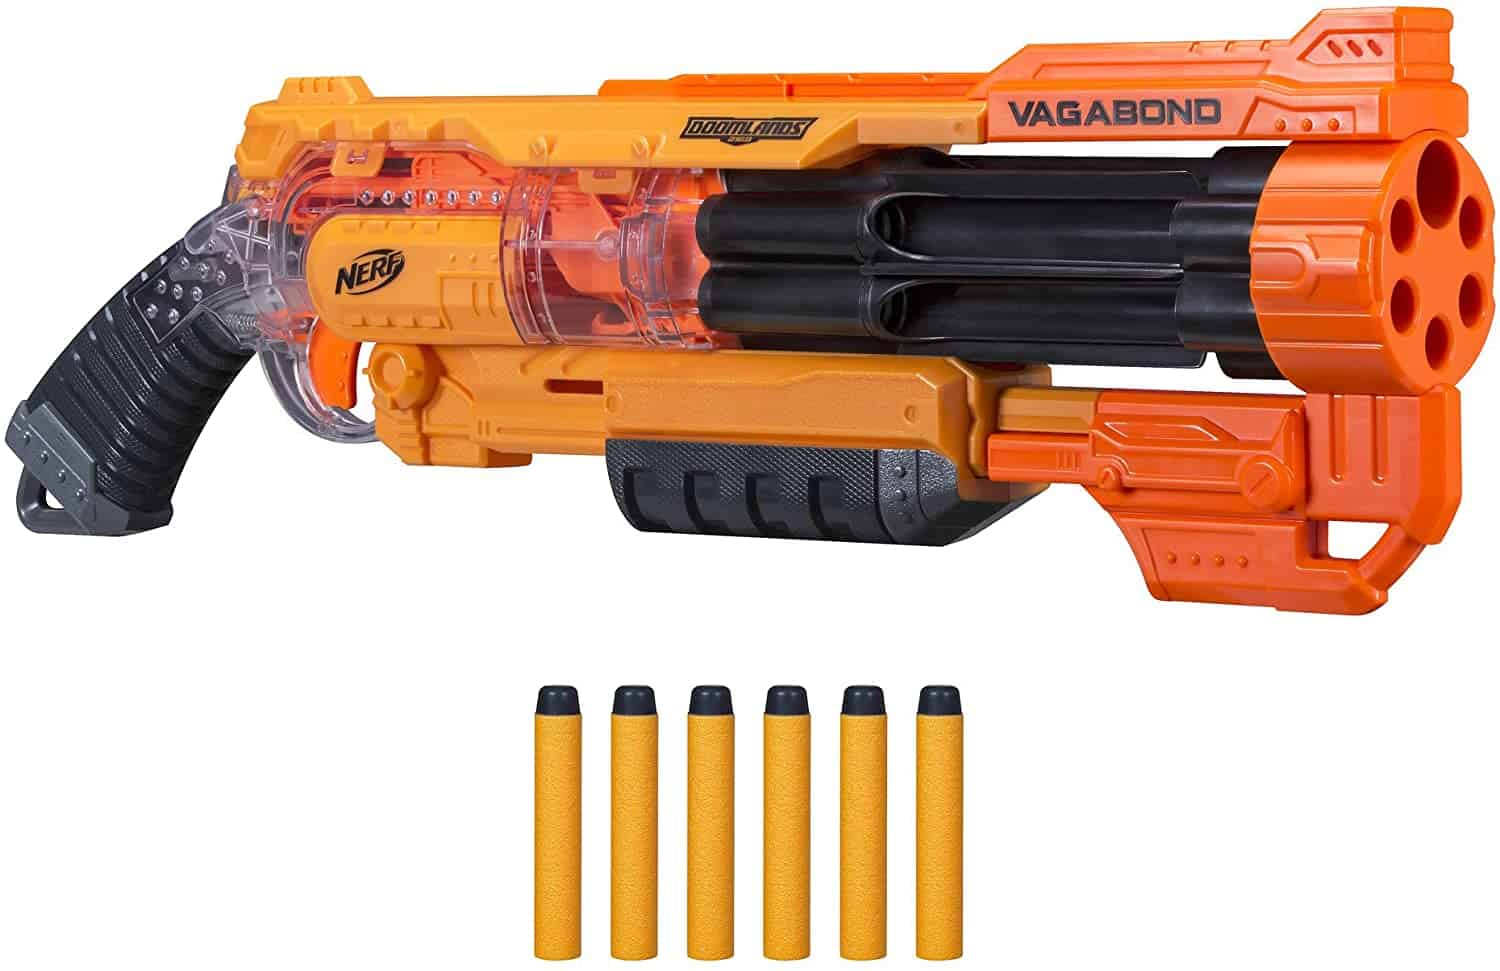 Nerf Doomlands 2169 Vagabond Blaster